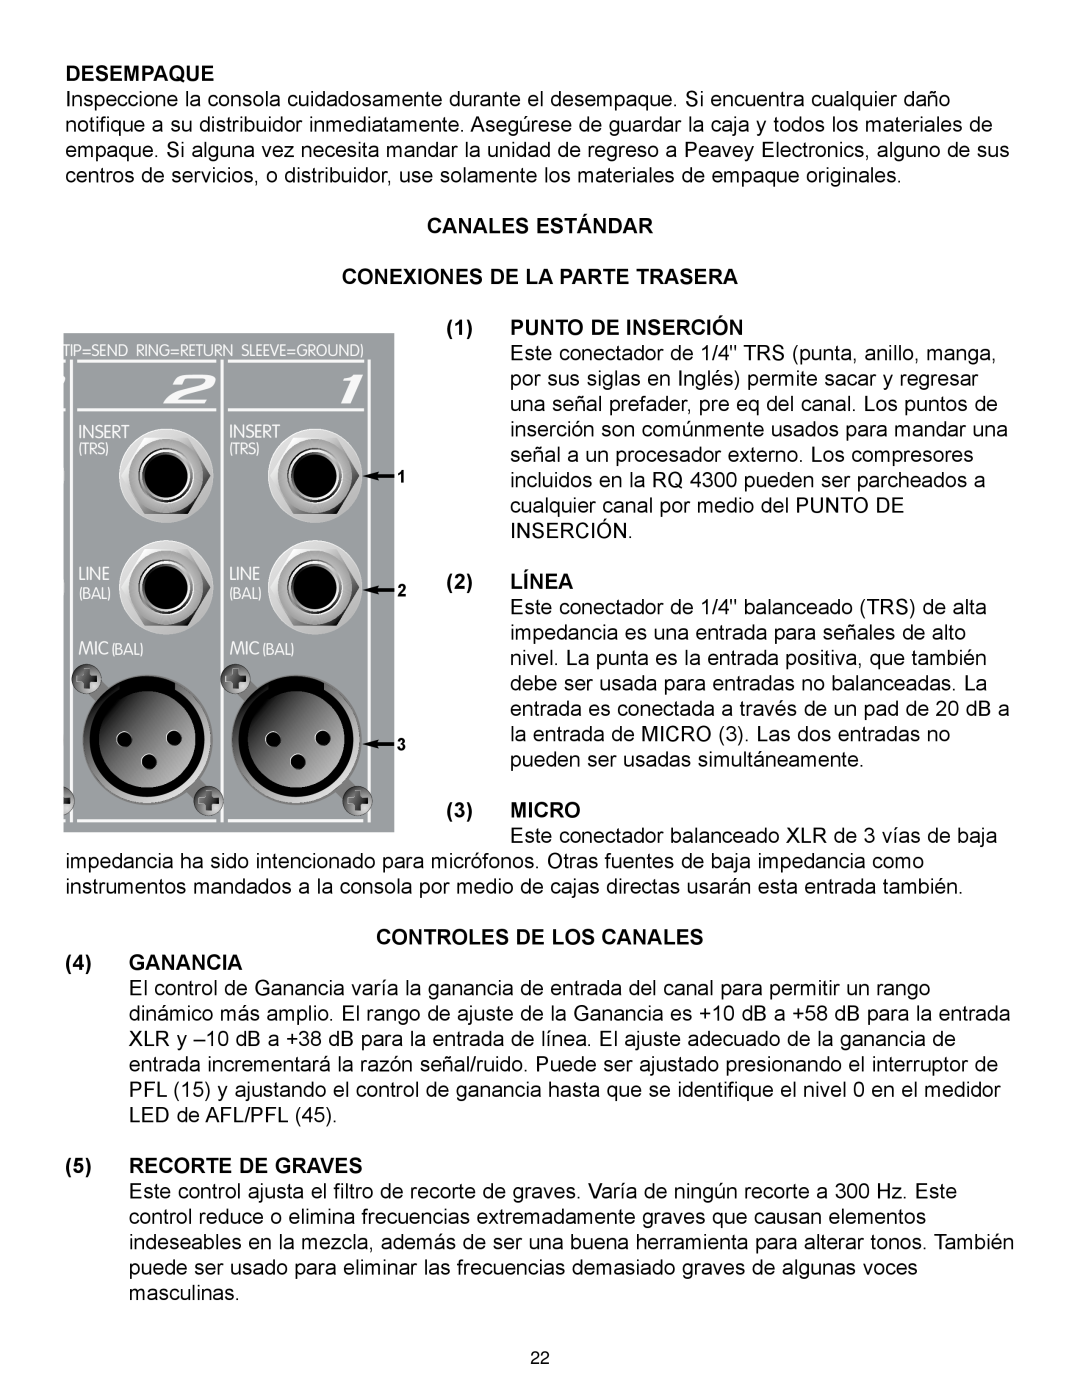 Peavey RQ 4300 Series manual Desempaque, CANALES ESTÁNDAR CONEXIONES DE LA PARTE TRASERA 1 PUNTO DE INSERCIÓN, Línea, Micro 